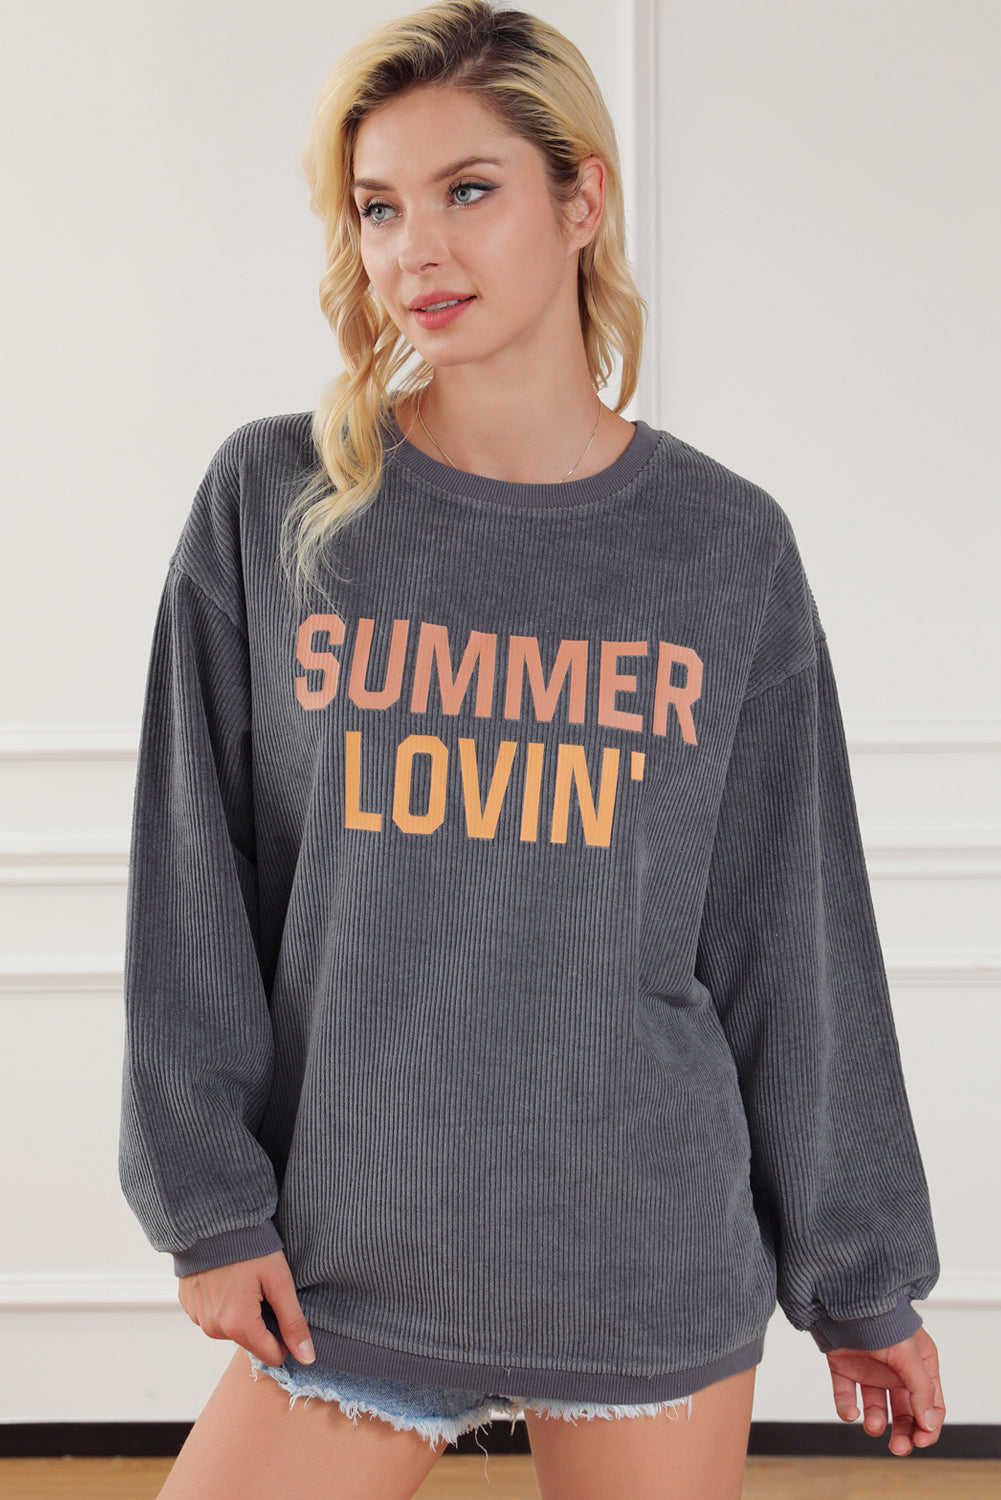 Sivi pulover s motivima SUMMER LOVIN